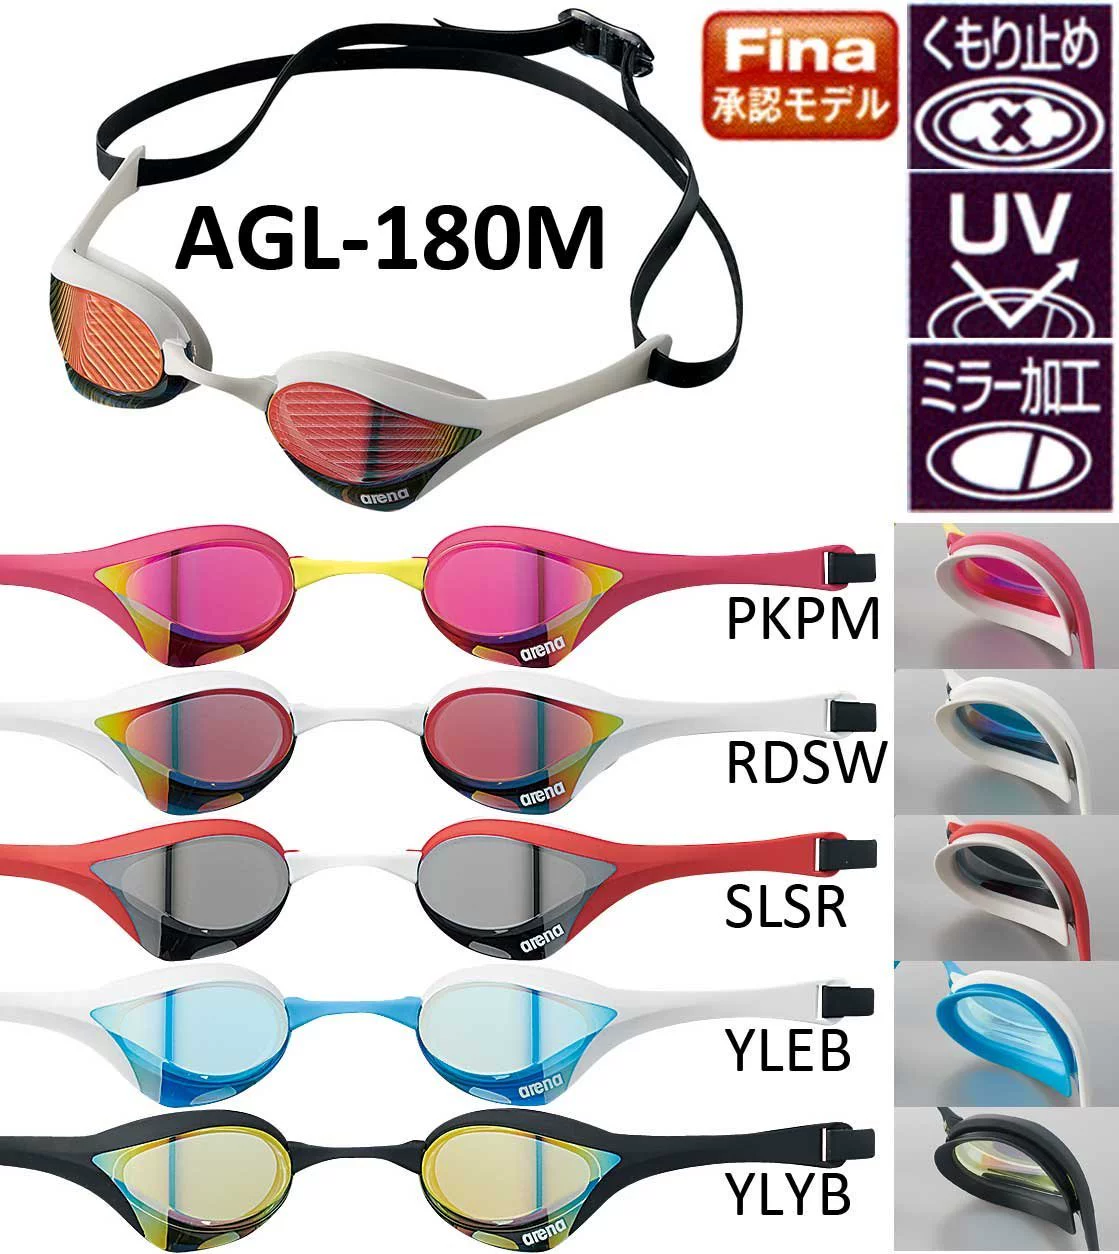 ArenaCobraUltraAGL-180M Thế vận hội Olympic Kính bơi UV Bảo vệ - Goggles